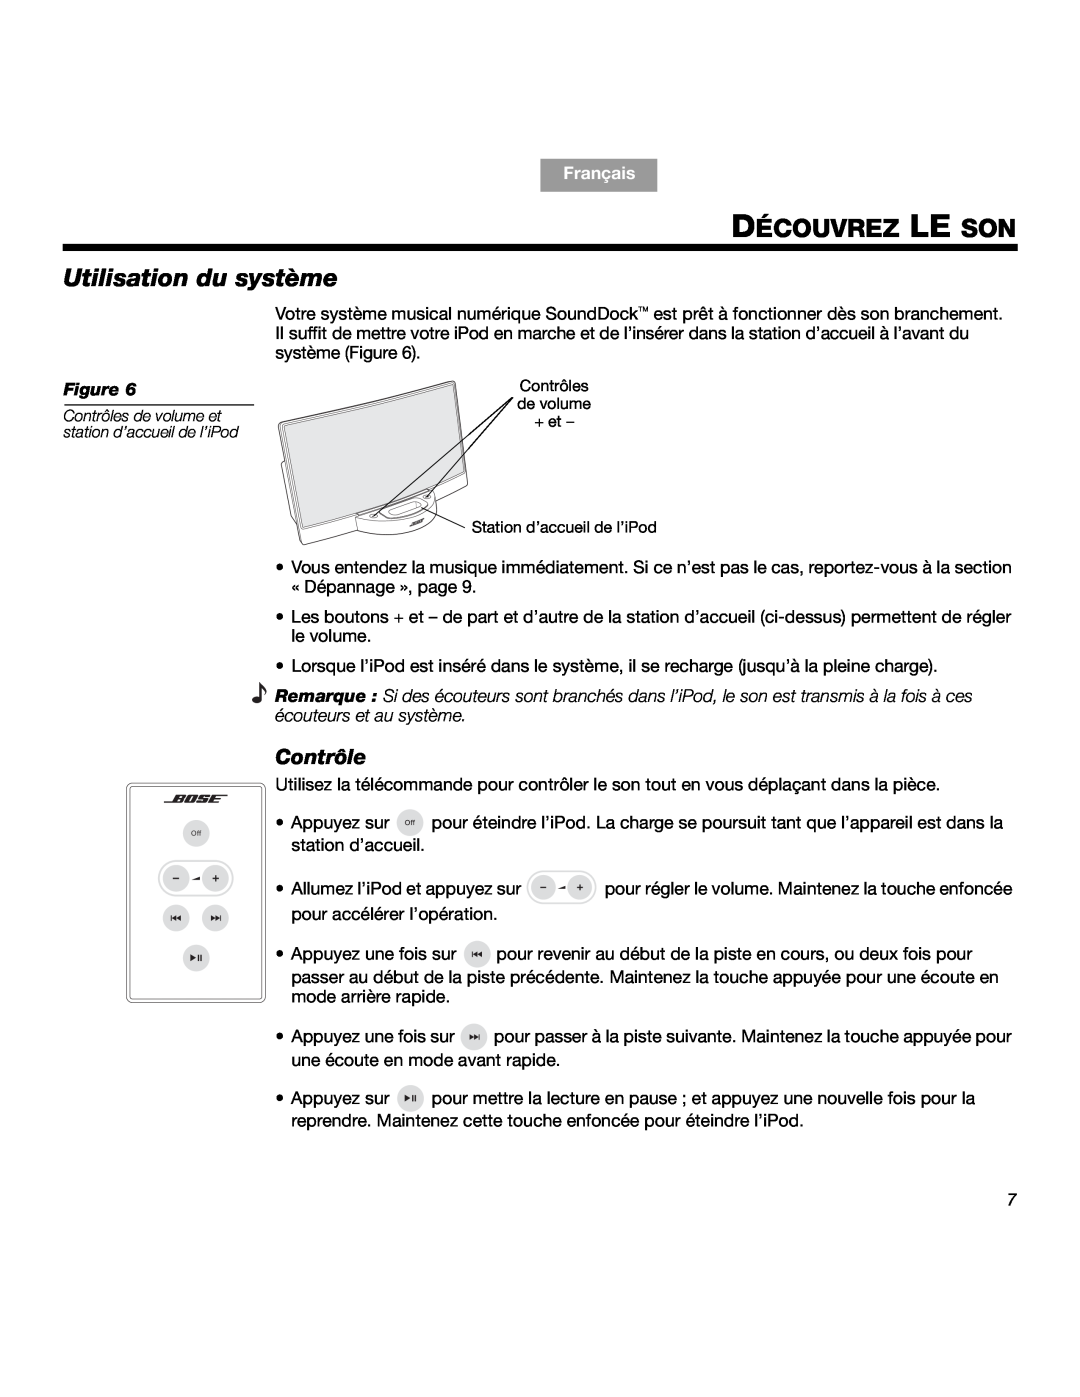 Bose SOUNDDOCKTM manual Découvrez Le Son, Utilisation du système, Contrôle, Français, Figure 